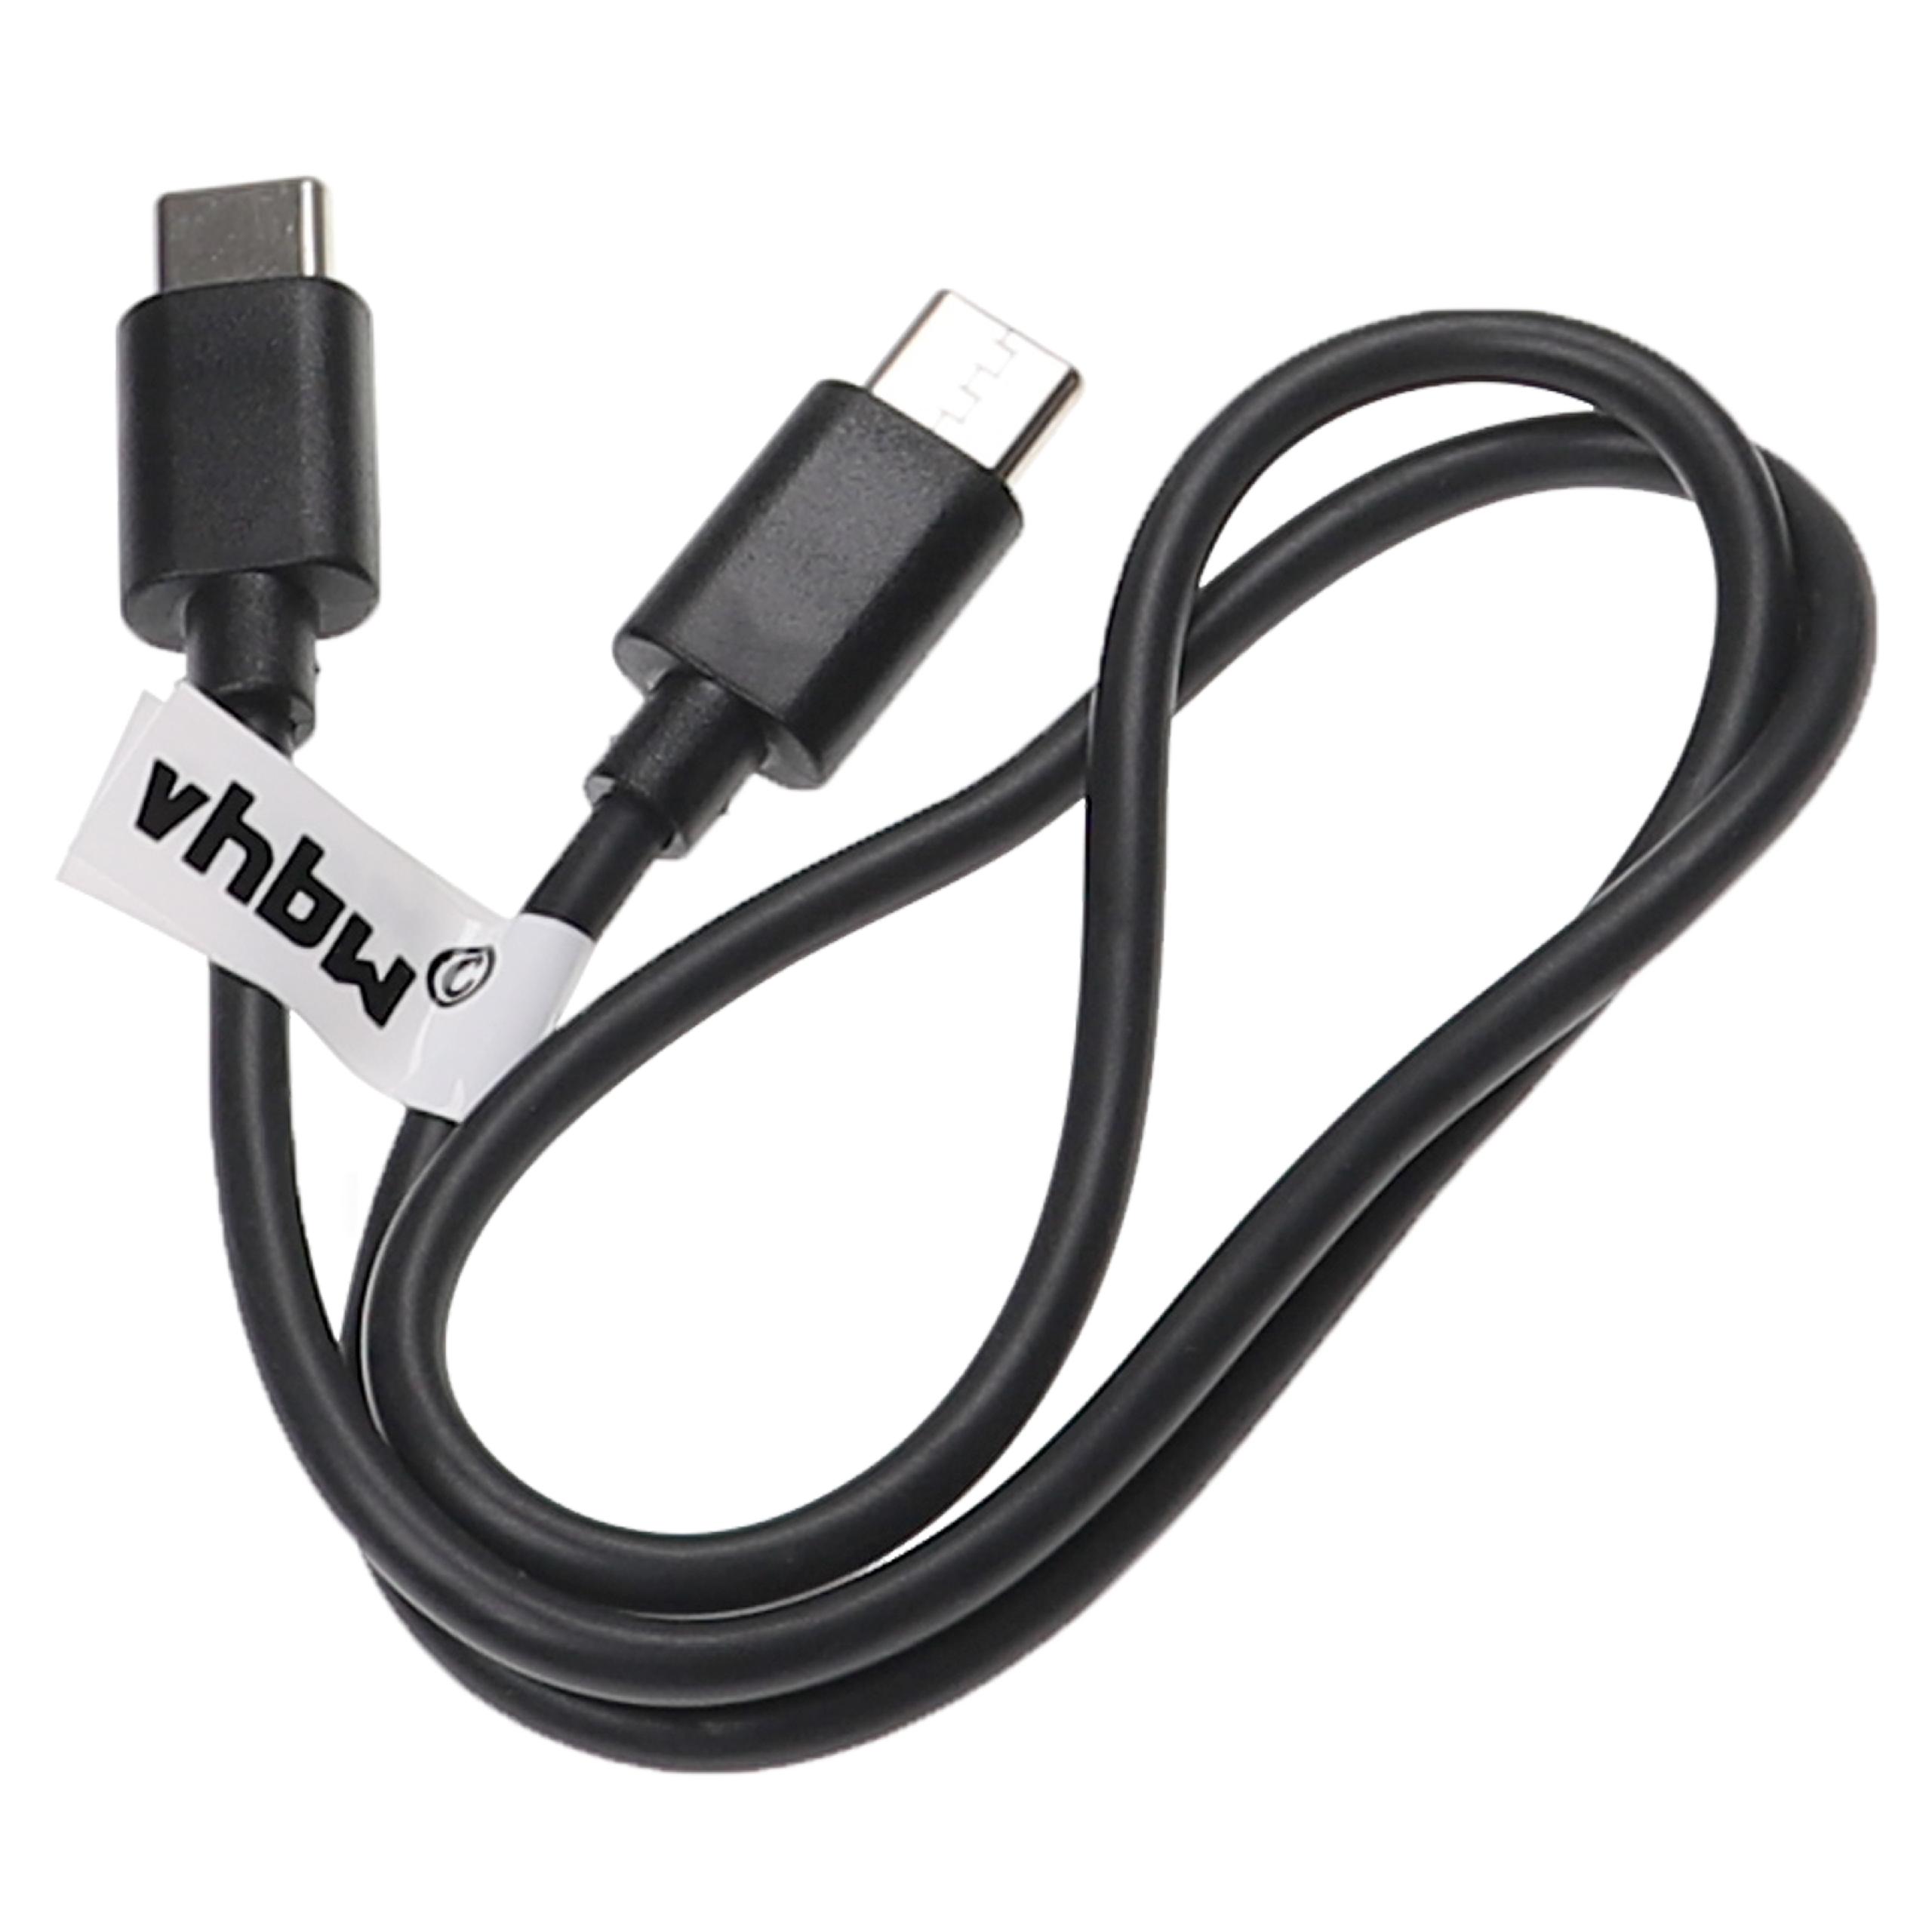 USB C Ladekabel passend für diverse Laptops, Tablets, Smartphones - USB C Kabel 50 cm Schwarz